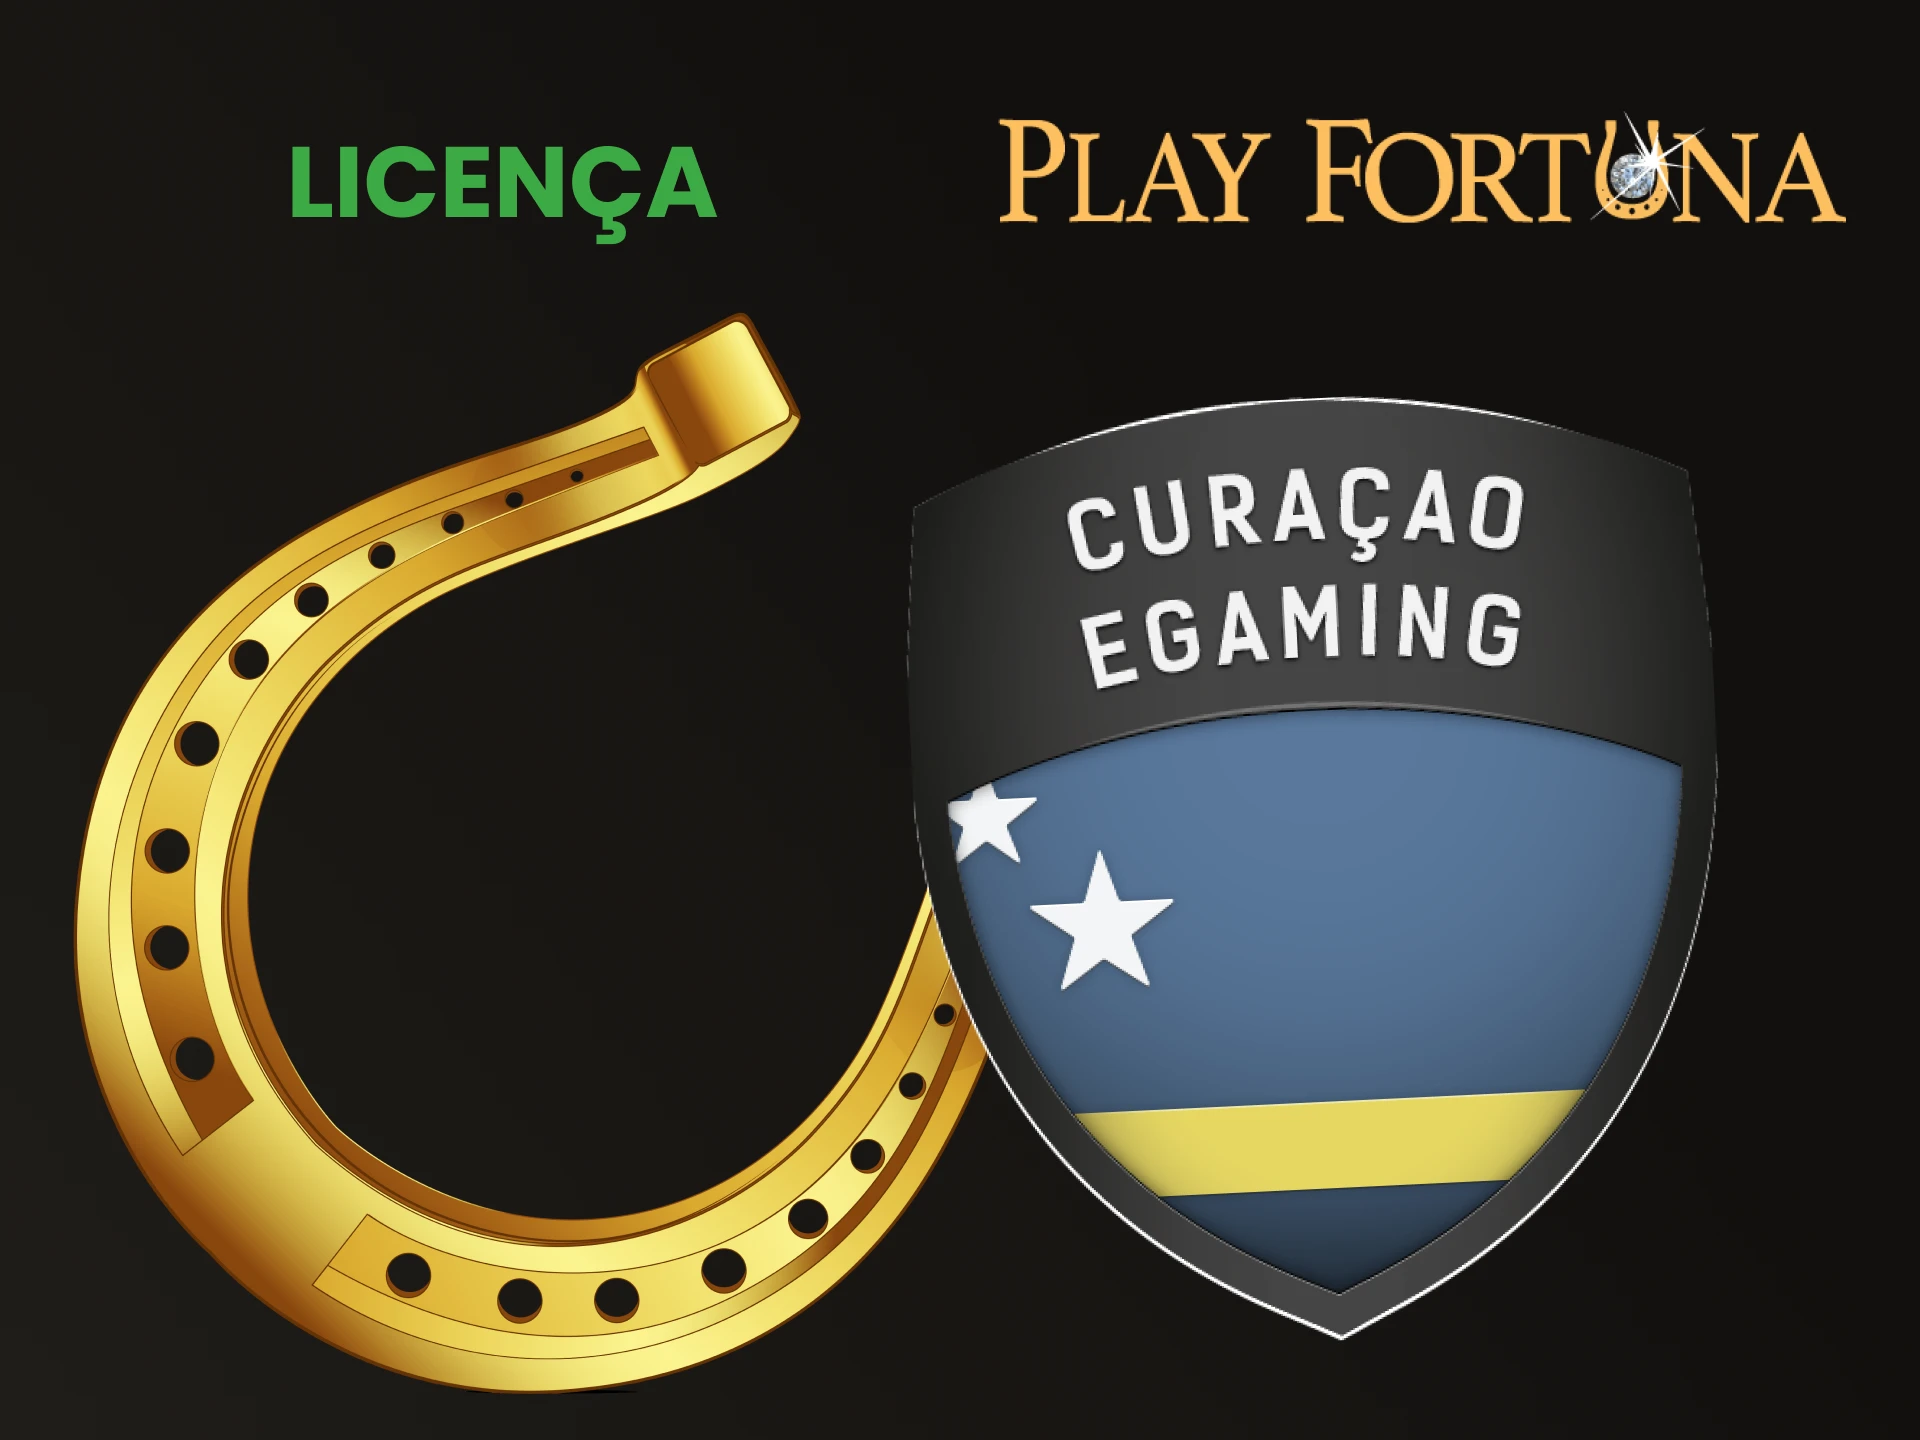 Play Fortuna possui uma licença especial.